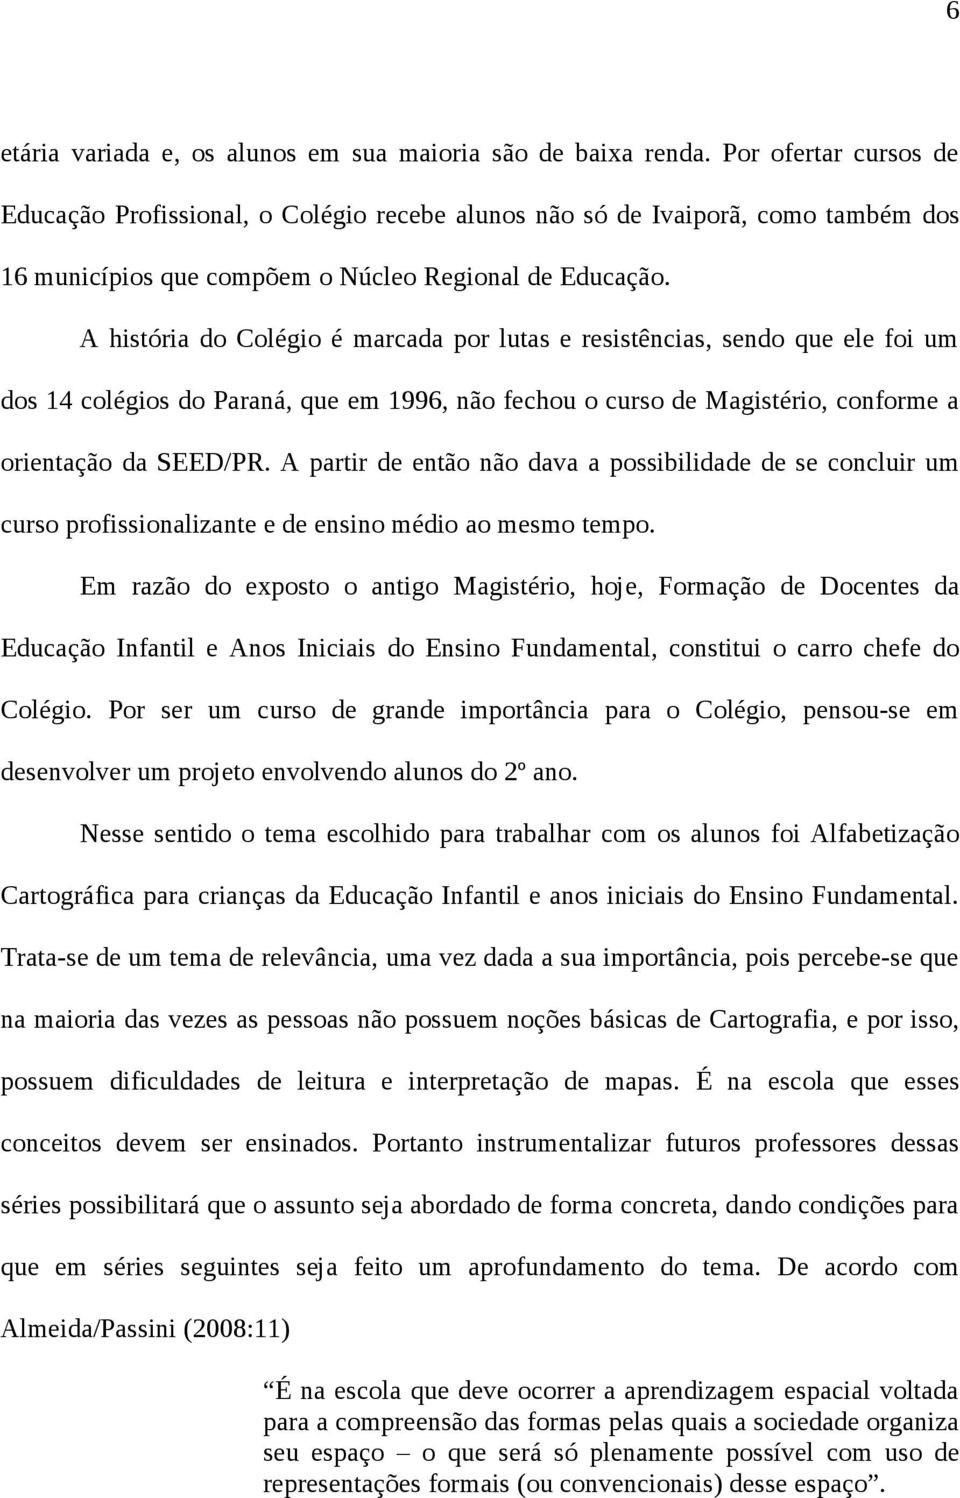 A história do Colégio é marcada por lutas e resistências, sendo que ele foi um dos 14 colégios do Paraná, que em 1996, não fechou o curso de Magistério, conforme a orientação da SEED/PR.